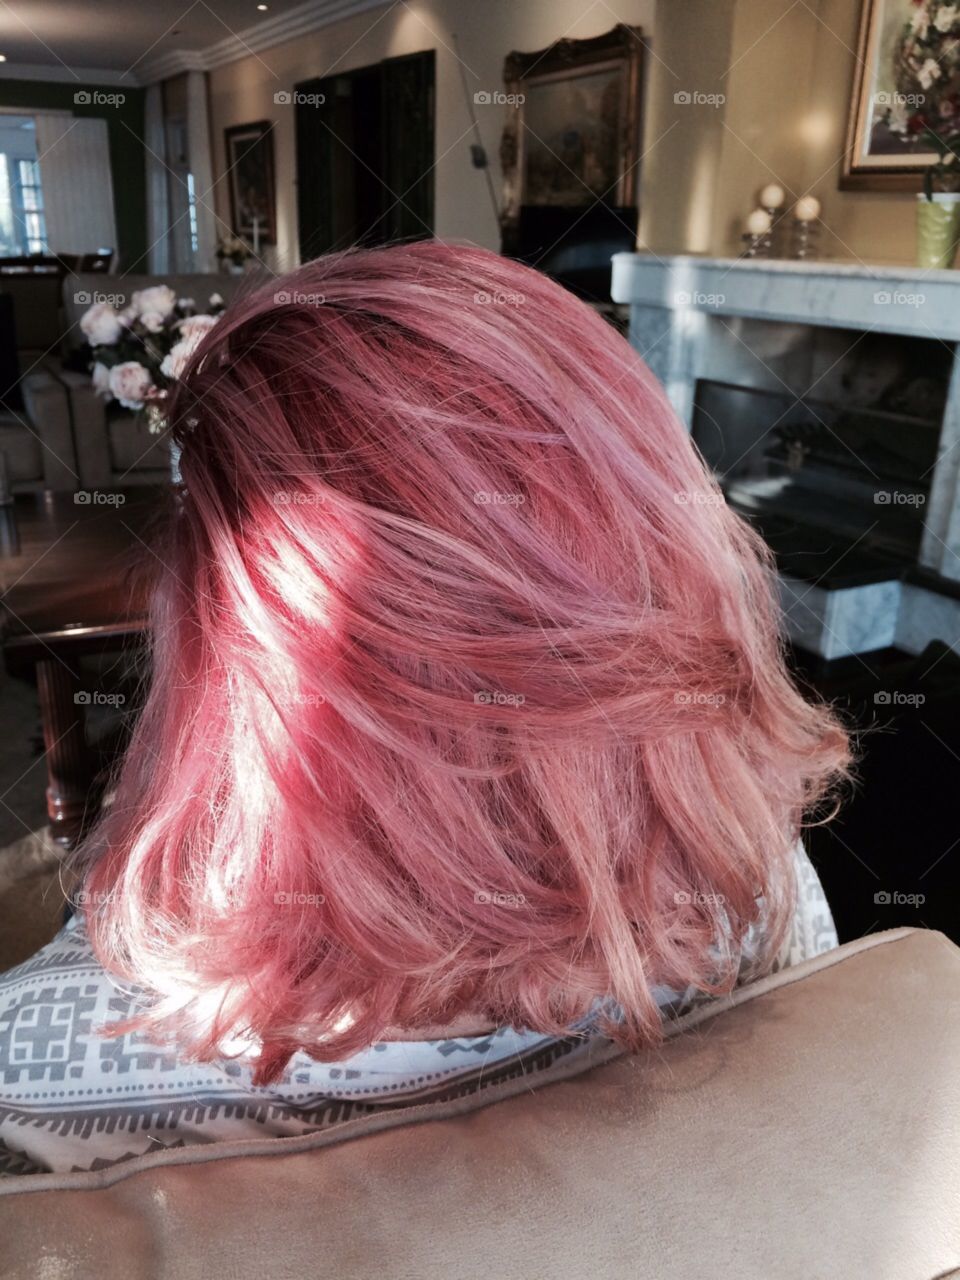 hair porn: pink hair